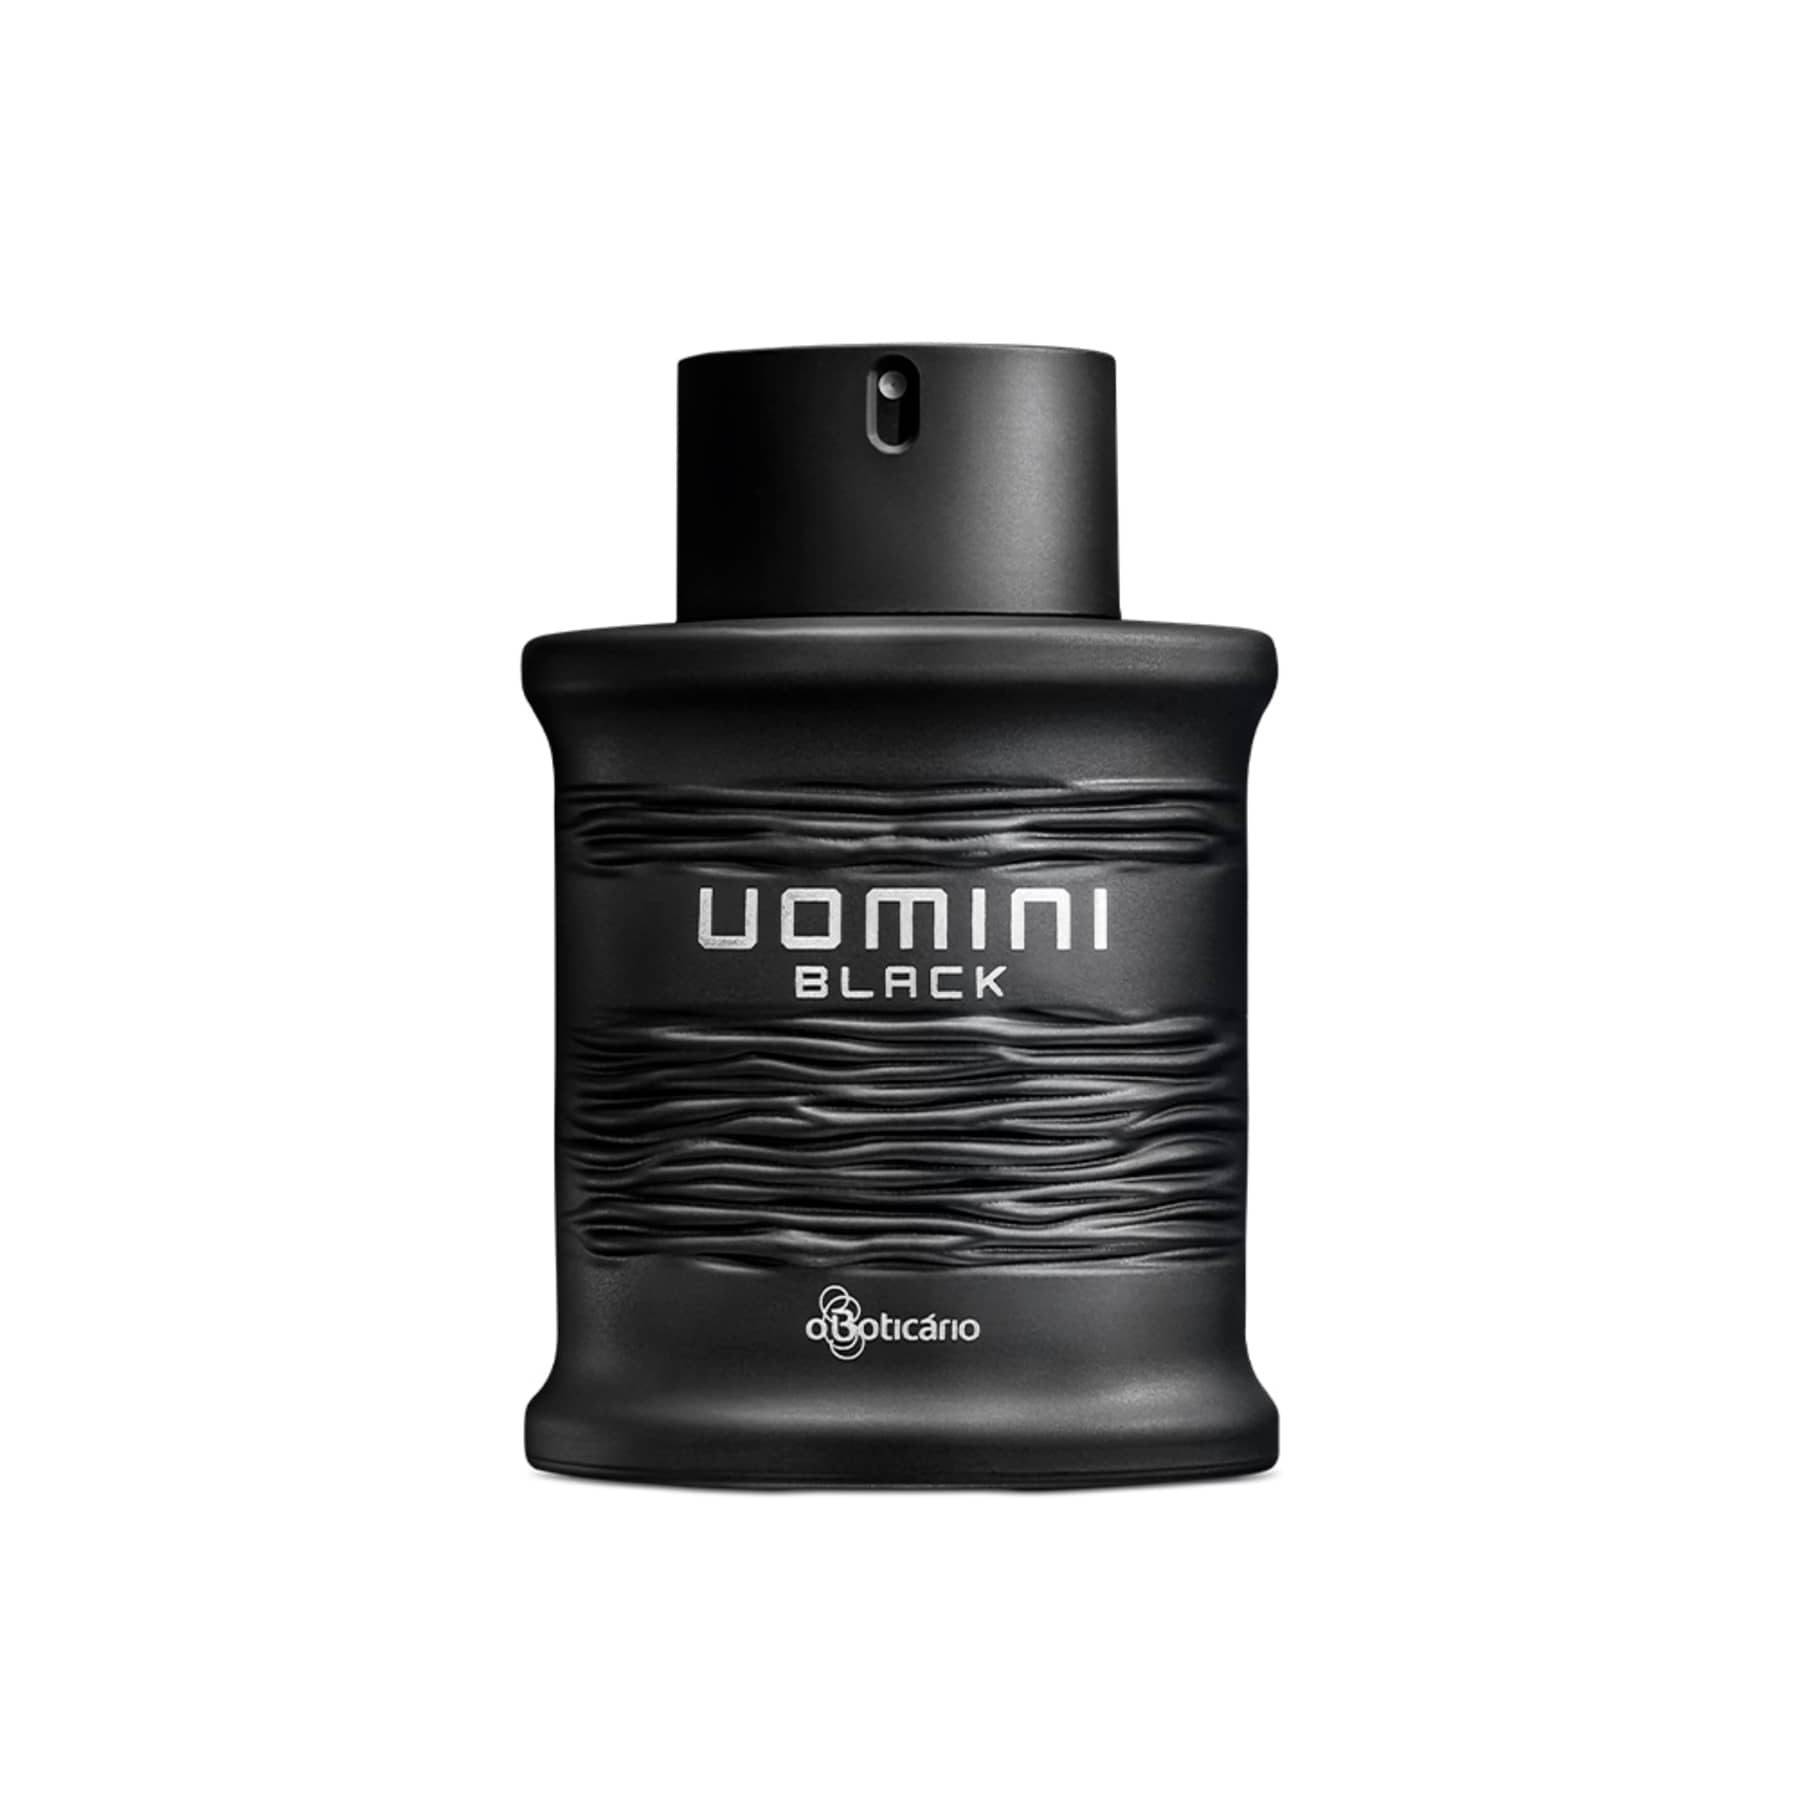 Uomini Black Deodorant Cologne 100ml - o Boticario